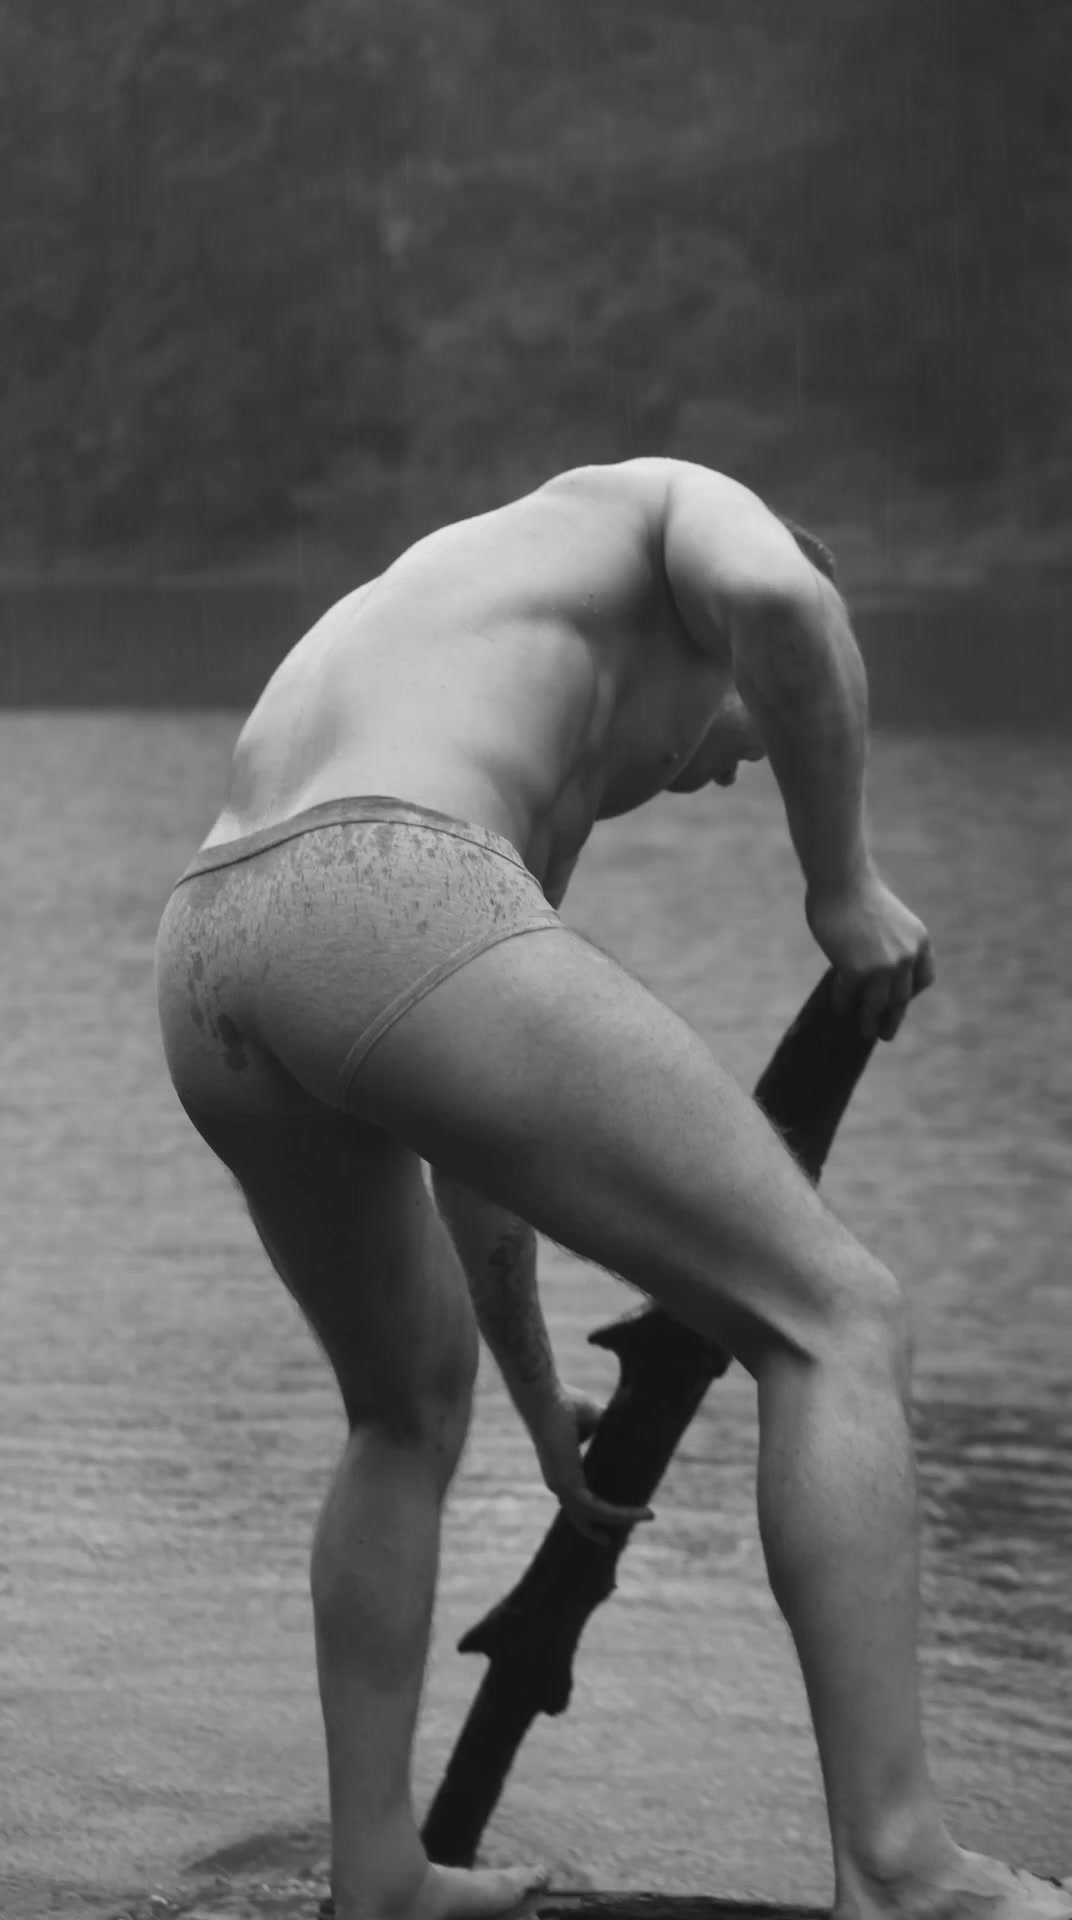 Guy at the lake (no nudity)